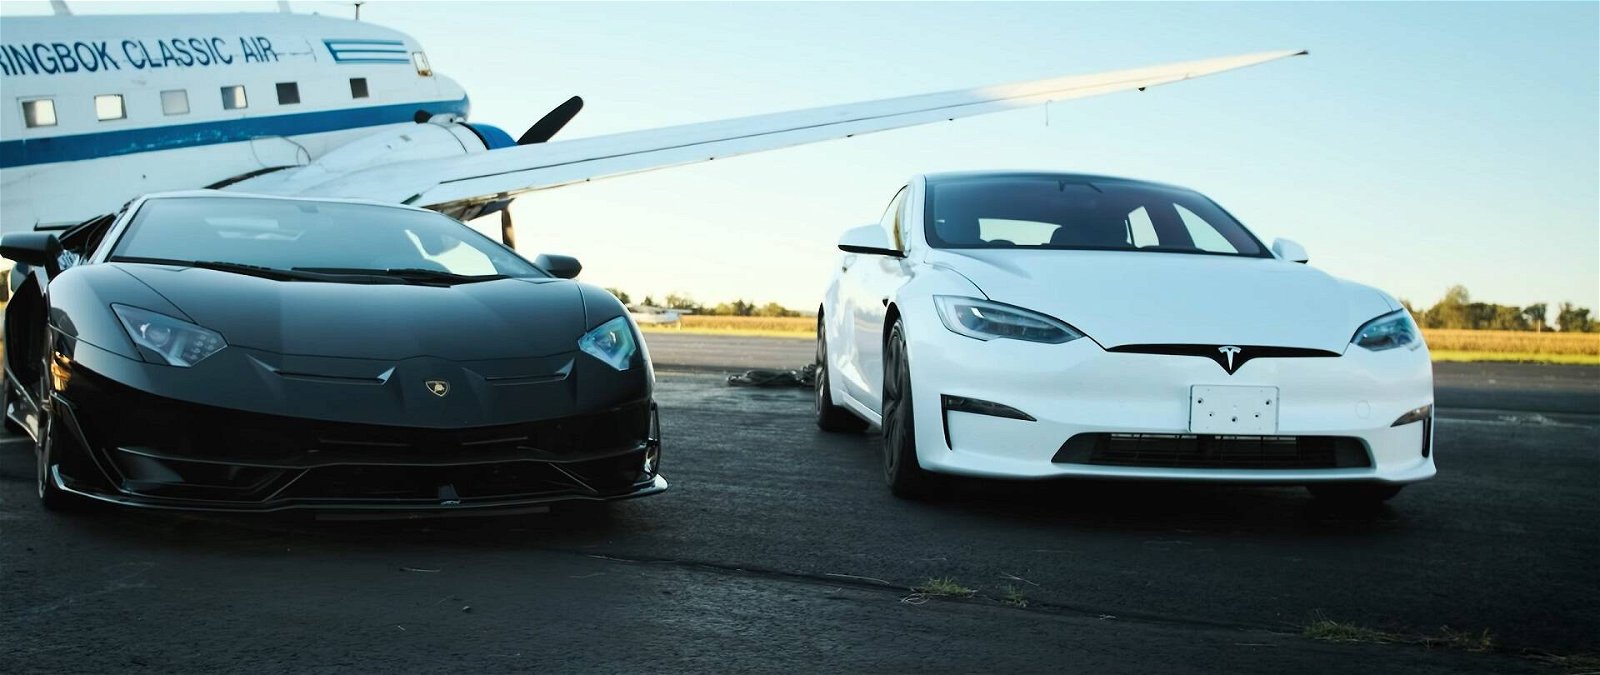 Immagine di Tesla Model S Plaid vs Lamborghini Aventador SVJ, la gara sul mezzo miglio